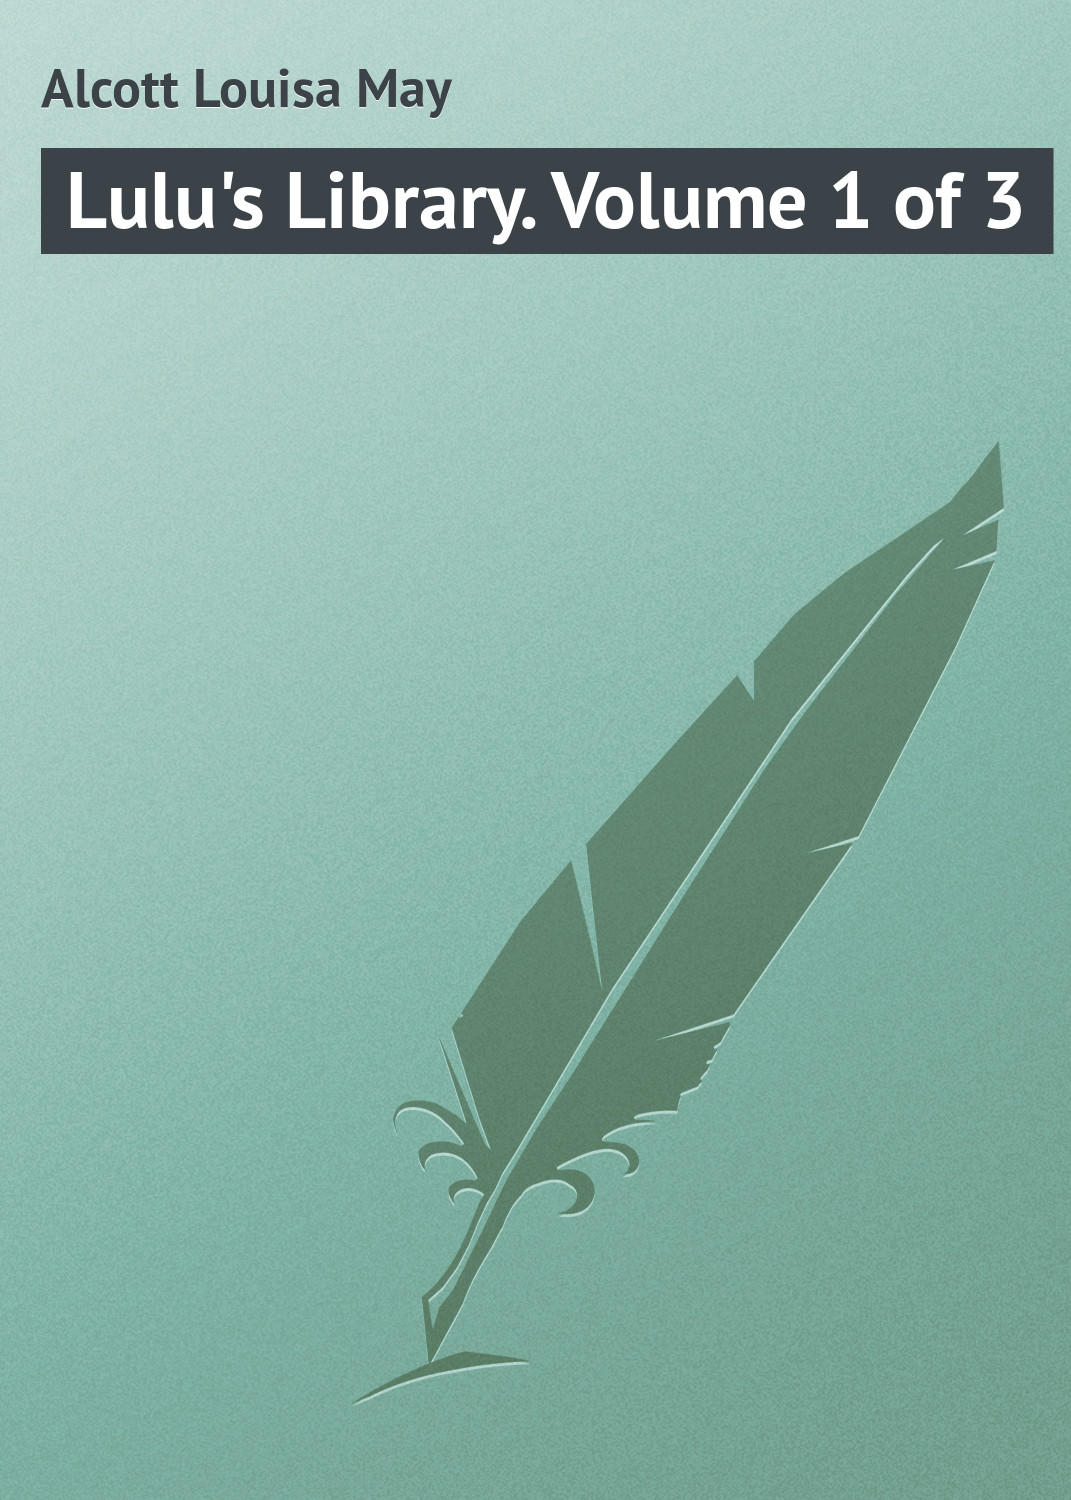 Книга Lulu's Library. Volume 1 of 3 из серии , созданная Louisa Alcott, может относится к жанру Зарубежная классика. Стоимость электронной книги Lulu's Library. Volume 1 of 3 с идентификатором 23145371 составляет 5.99 руб.